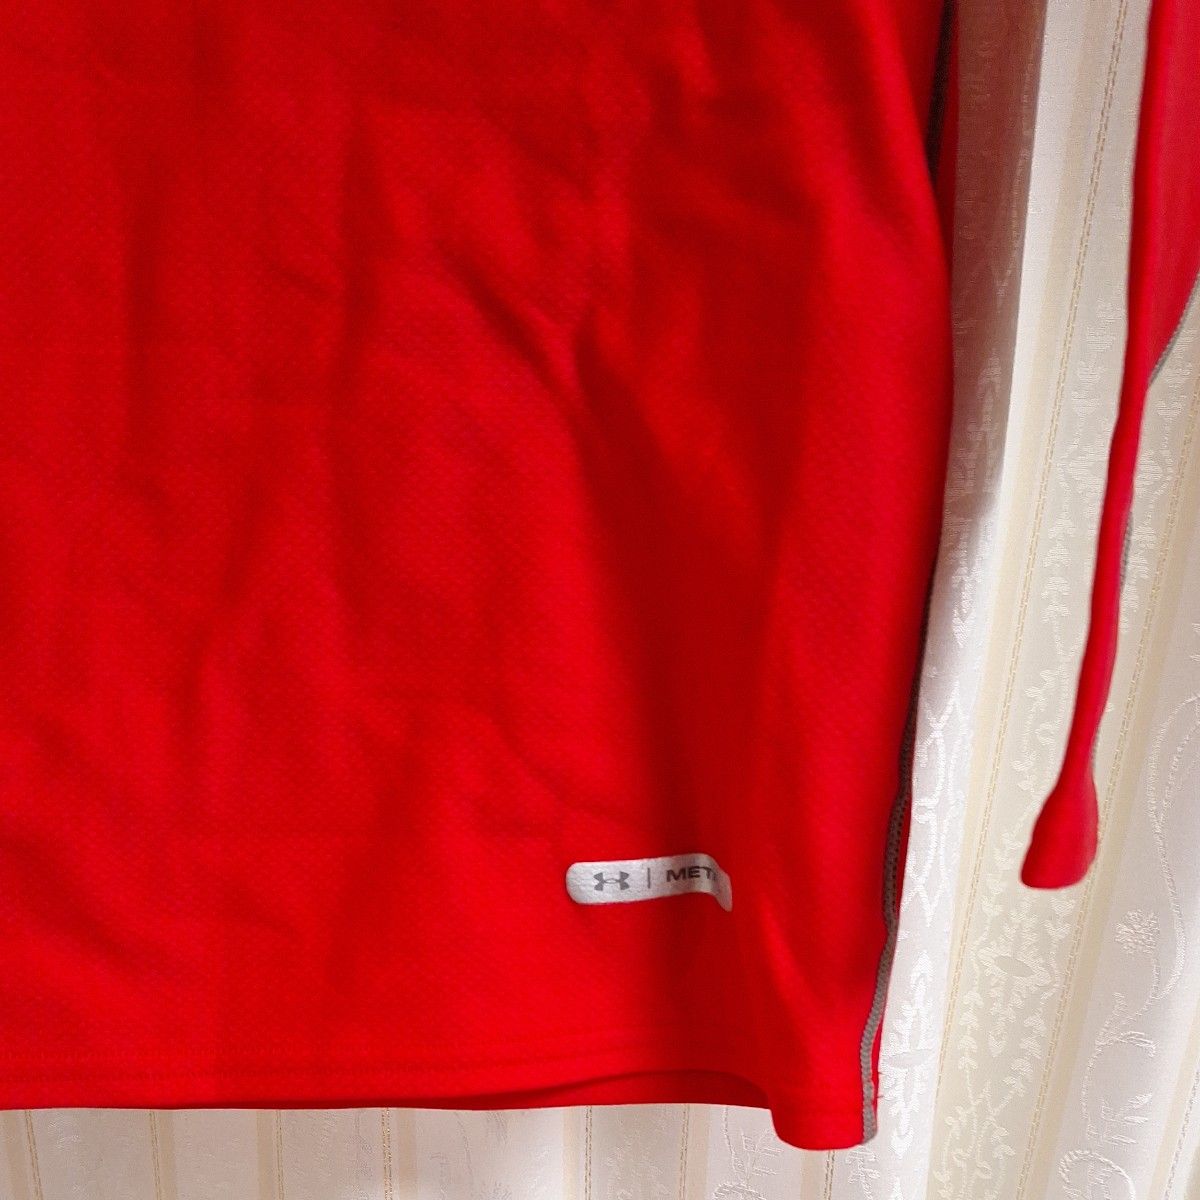 アンダーアーマー UNDER ARMOUR 長袖メタルインナーシャツ赤×グレーサイズMD綺麗です③